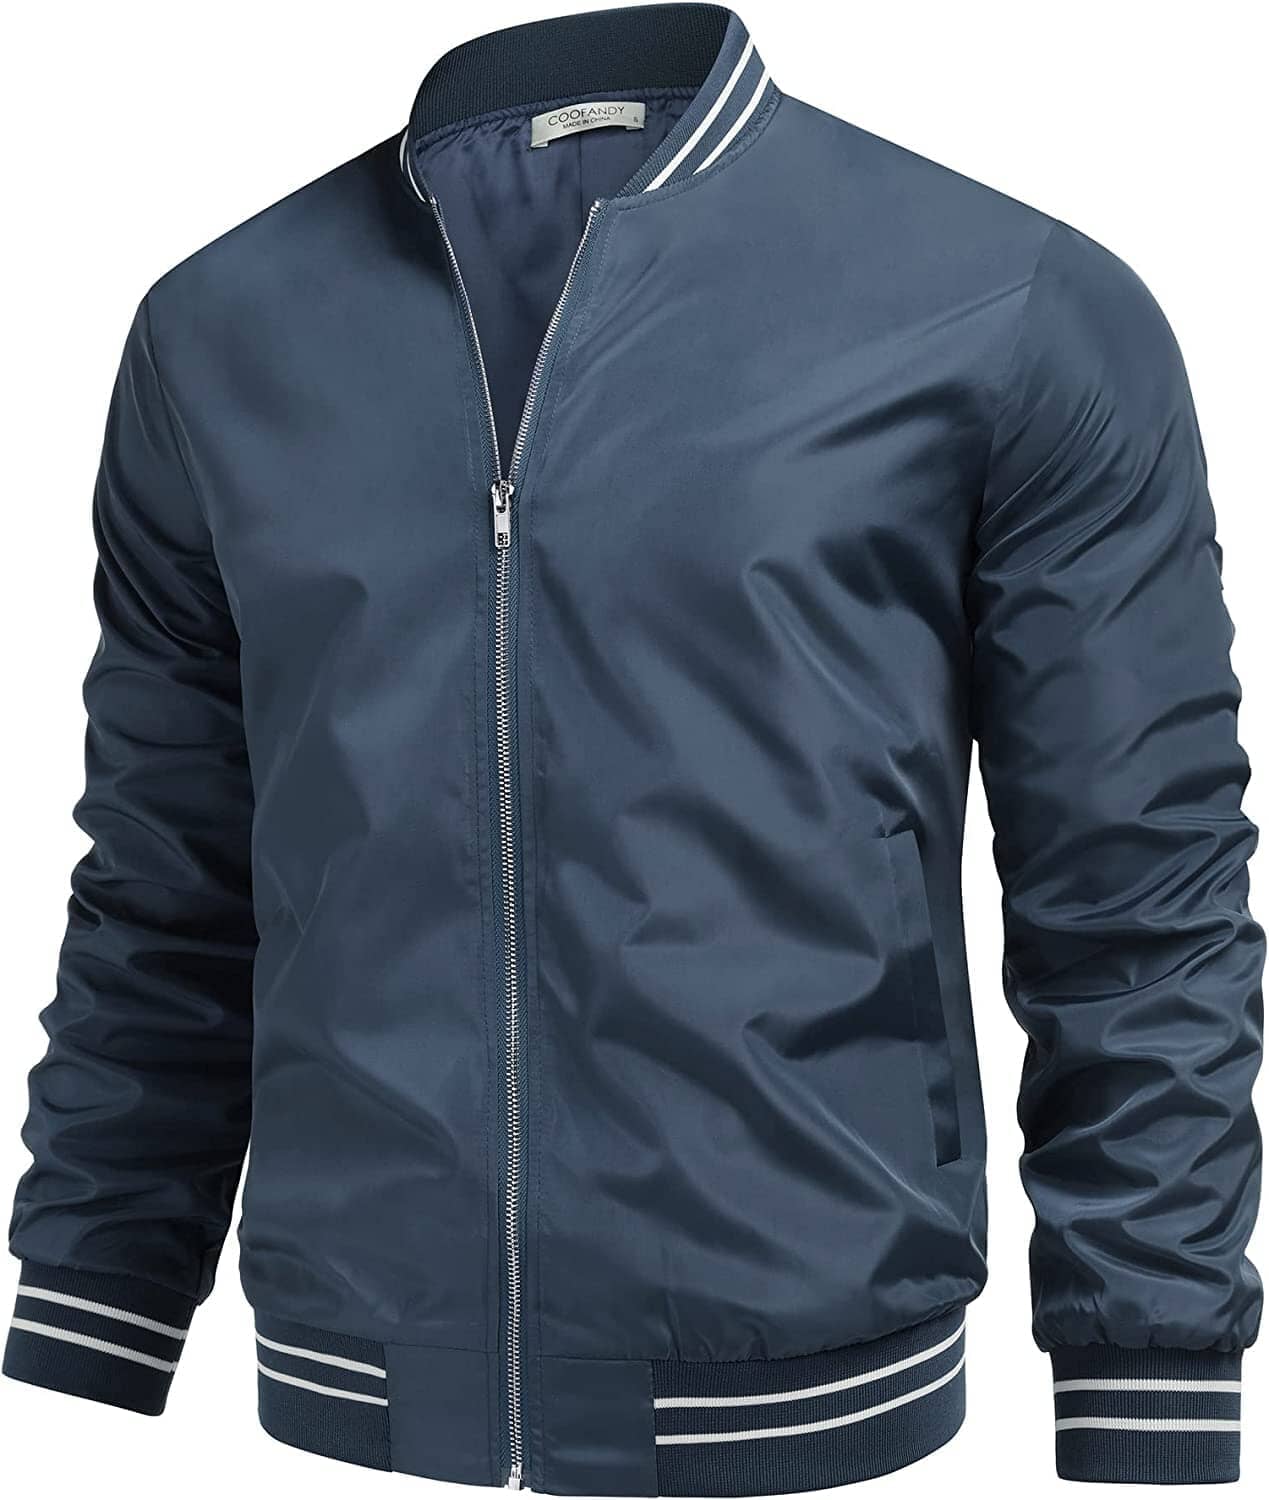 Lightweight Windbreaker Full Zip Jacket (US Only) Jackets COOFANDY Store Dark Blue S 